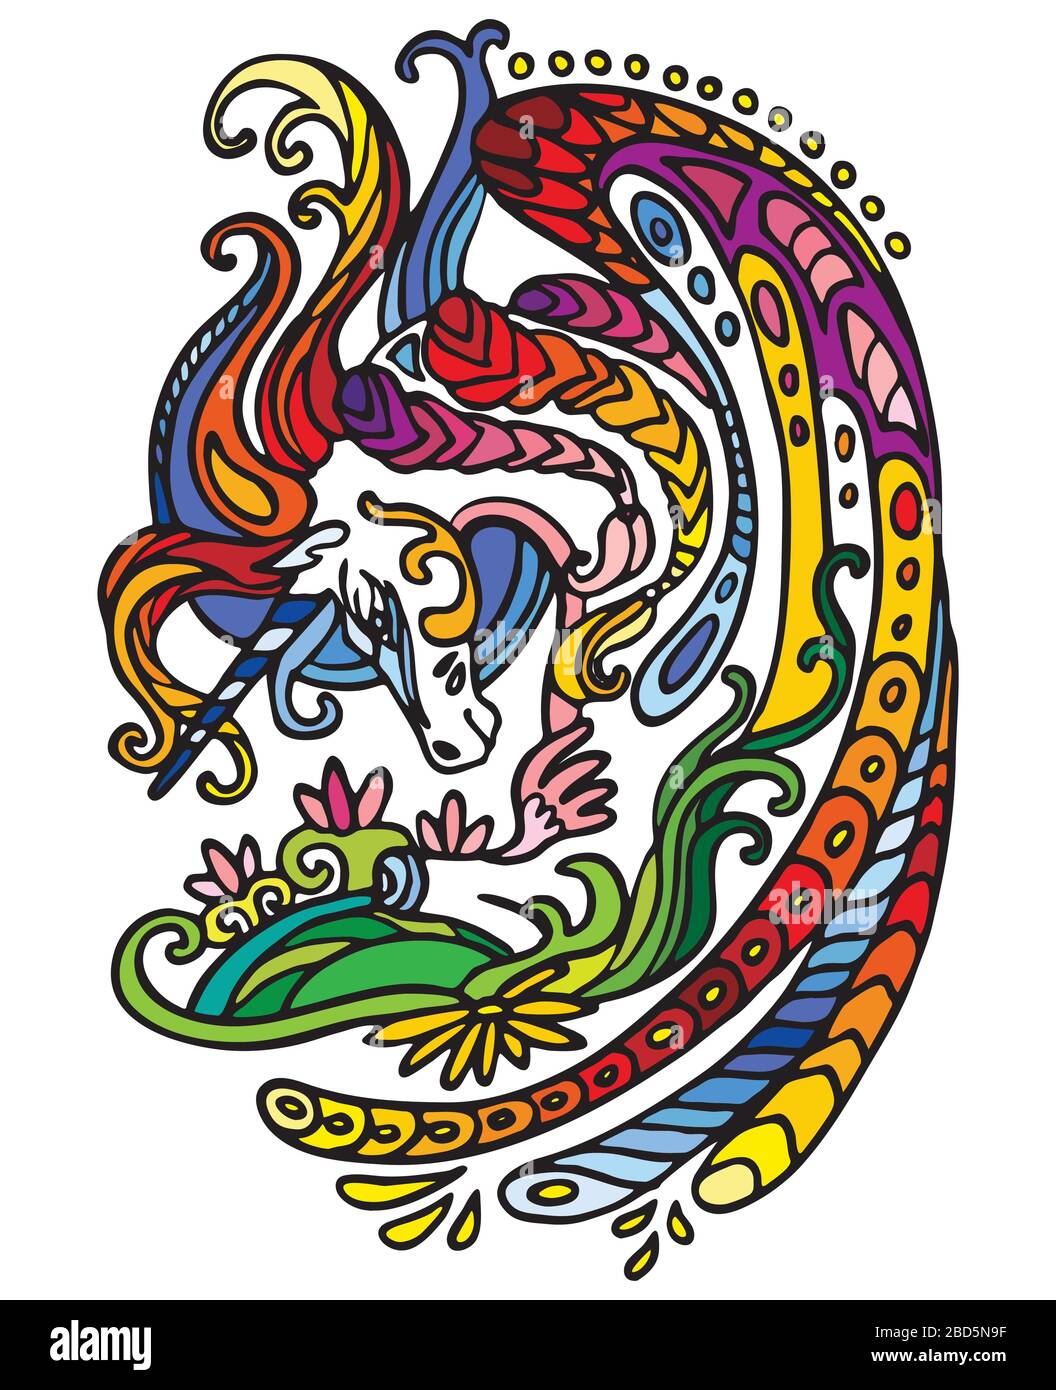 Piodon décoratif coloré vectoriel ornement arc-en-ciel unicorn. Illustration vectorielle abstraite décorative dans des couleurs multicolores avec isolat de contour noir Illustration de Vecteur